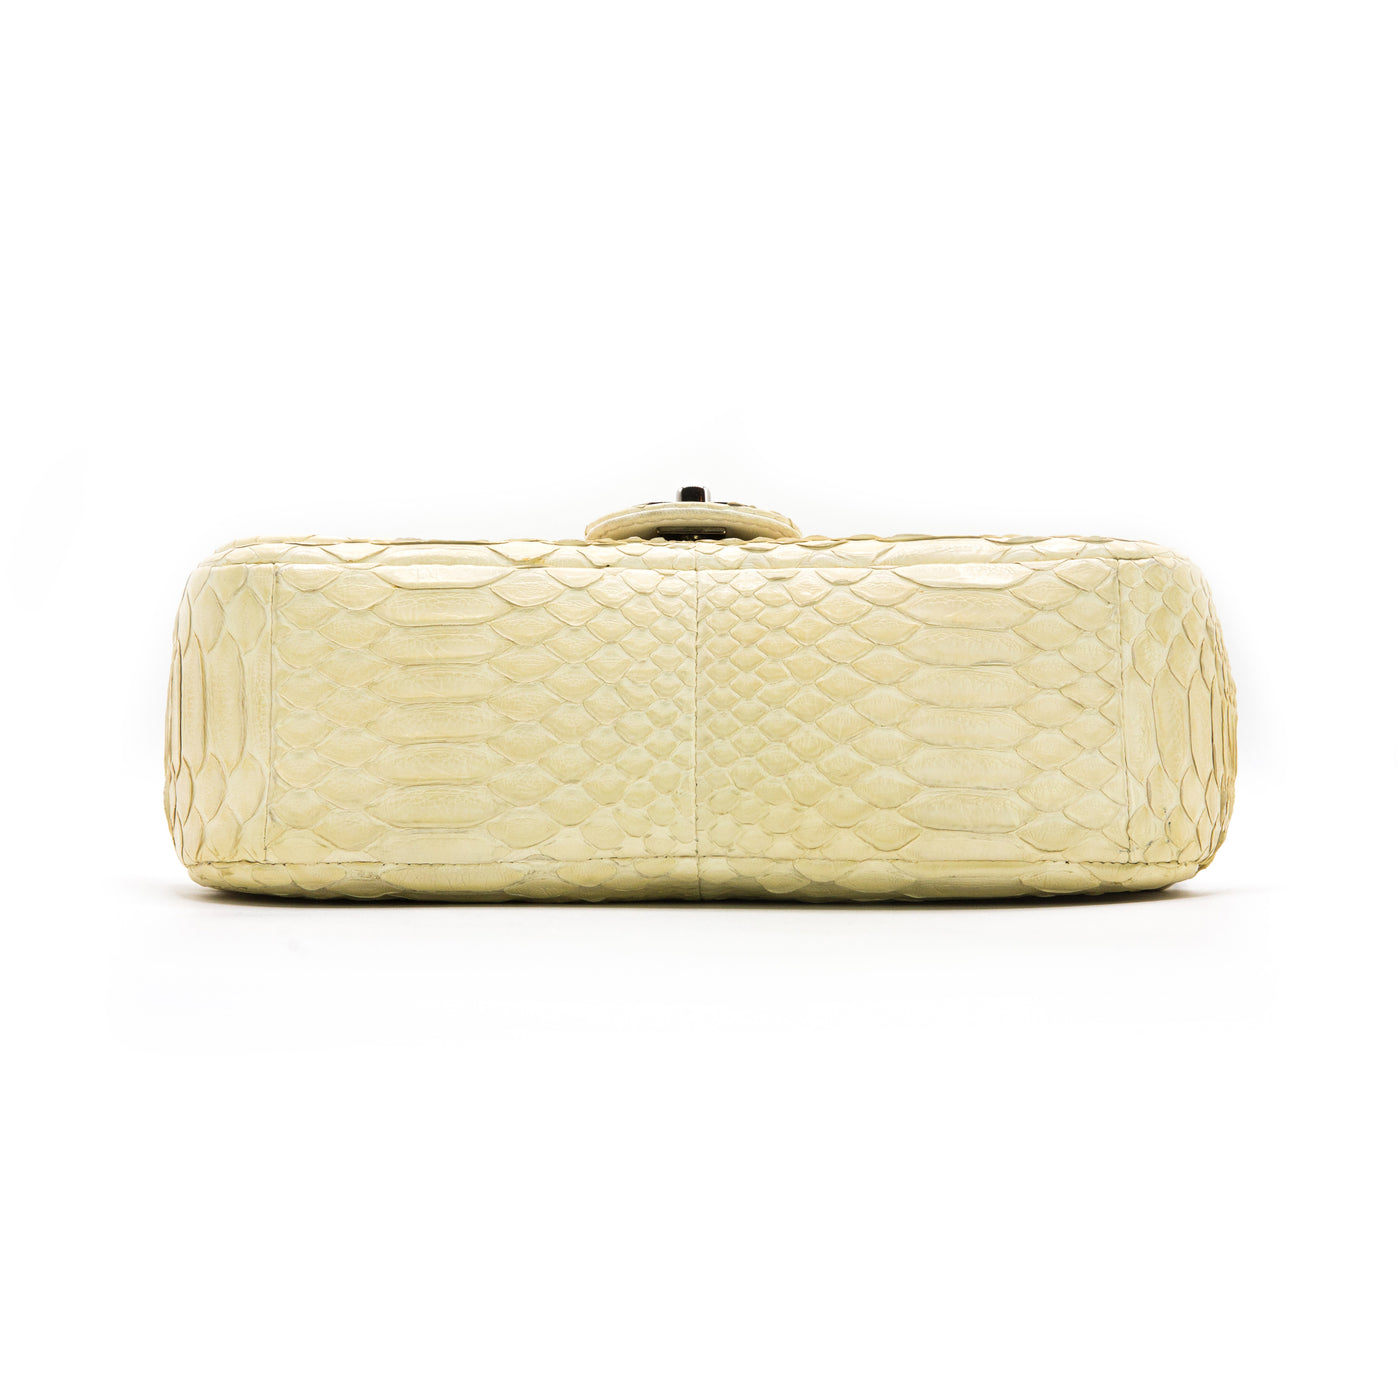 Chanel Bone White Python 2.55 10” Single Flap Bag